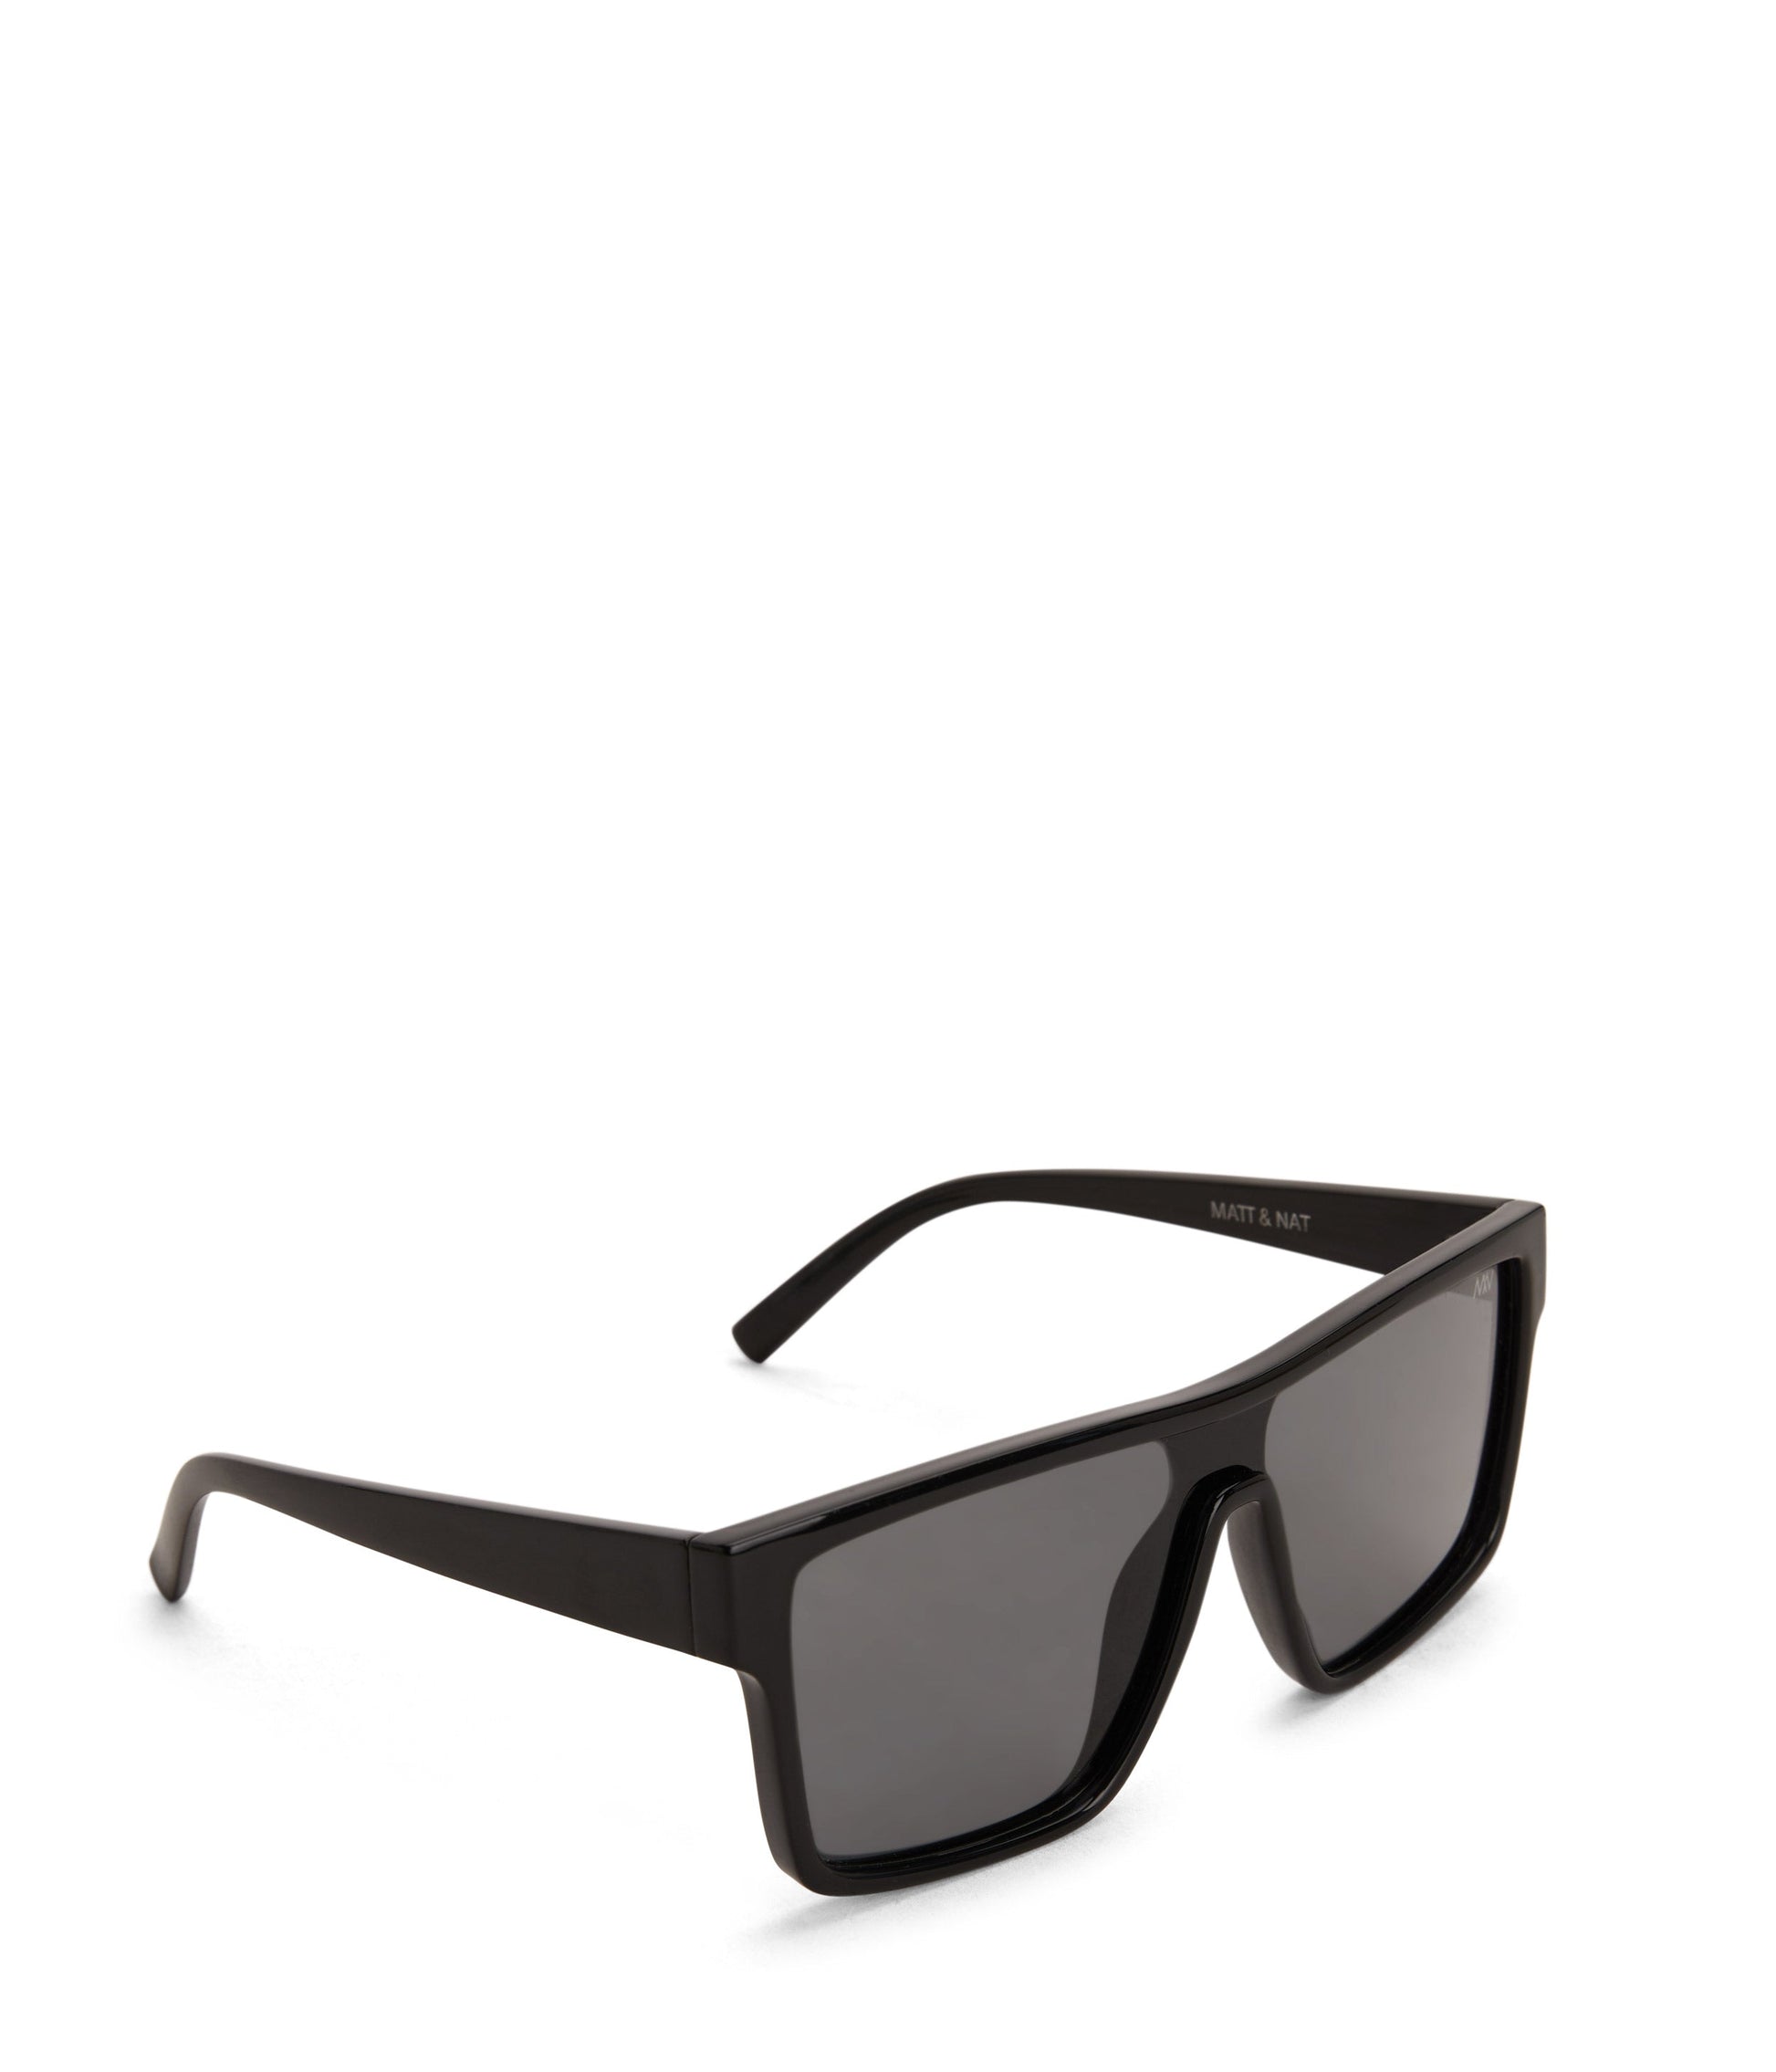 MAEVE Retro Squared Sunglasses | Color: Black - variant::black